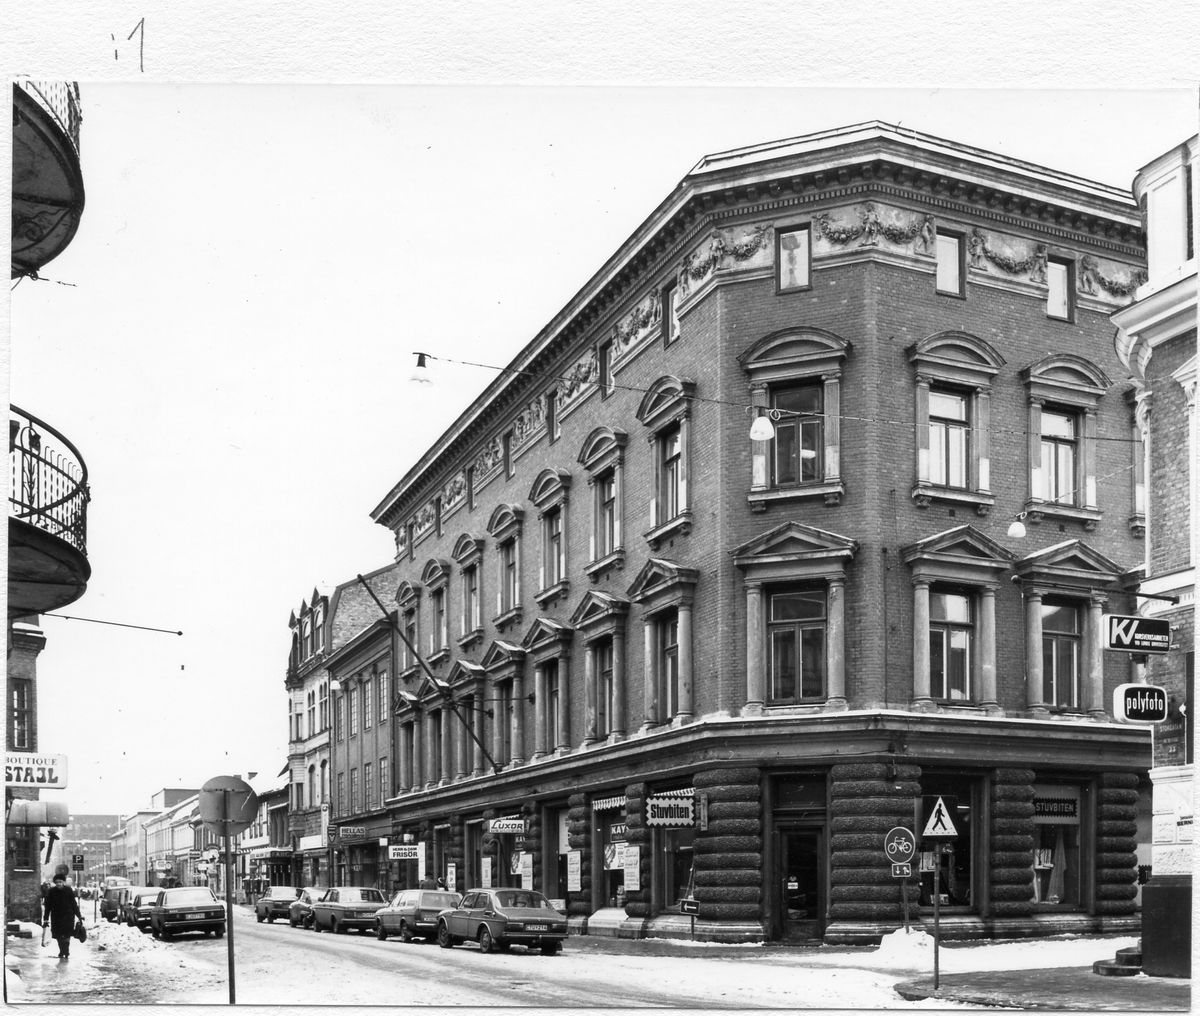 Halmstad, Storgatan 31. Kv Drottning Kristina. Halmstads första bankpalats, Hallands Enskilda Bank, uppfört år 1883 i nyrenässans.